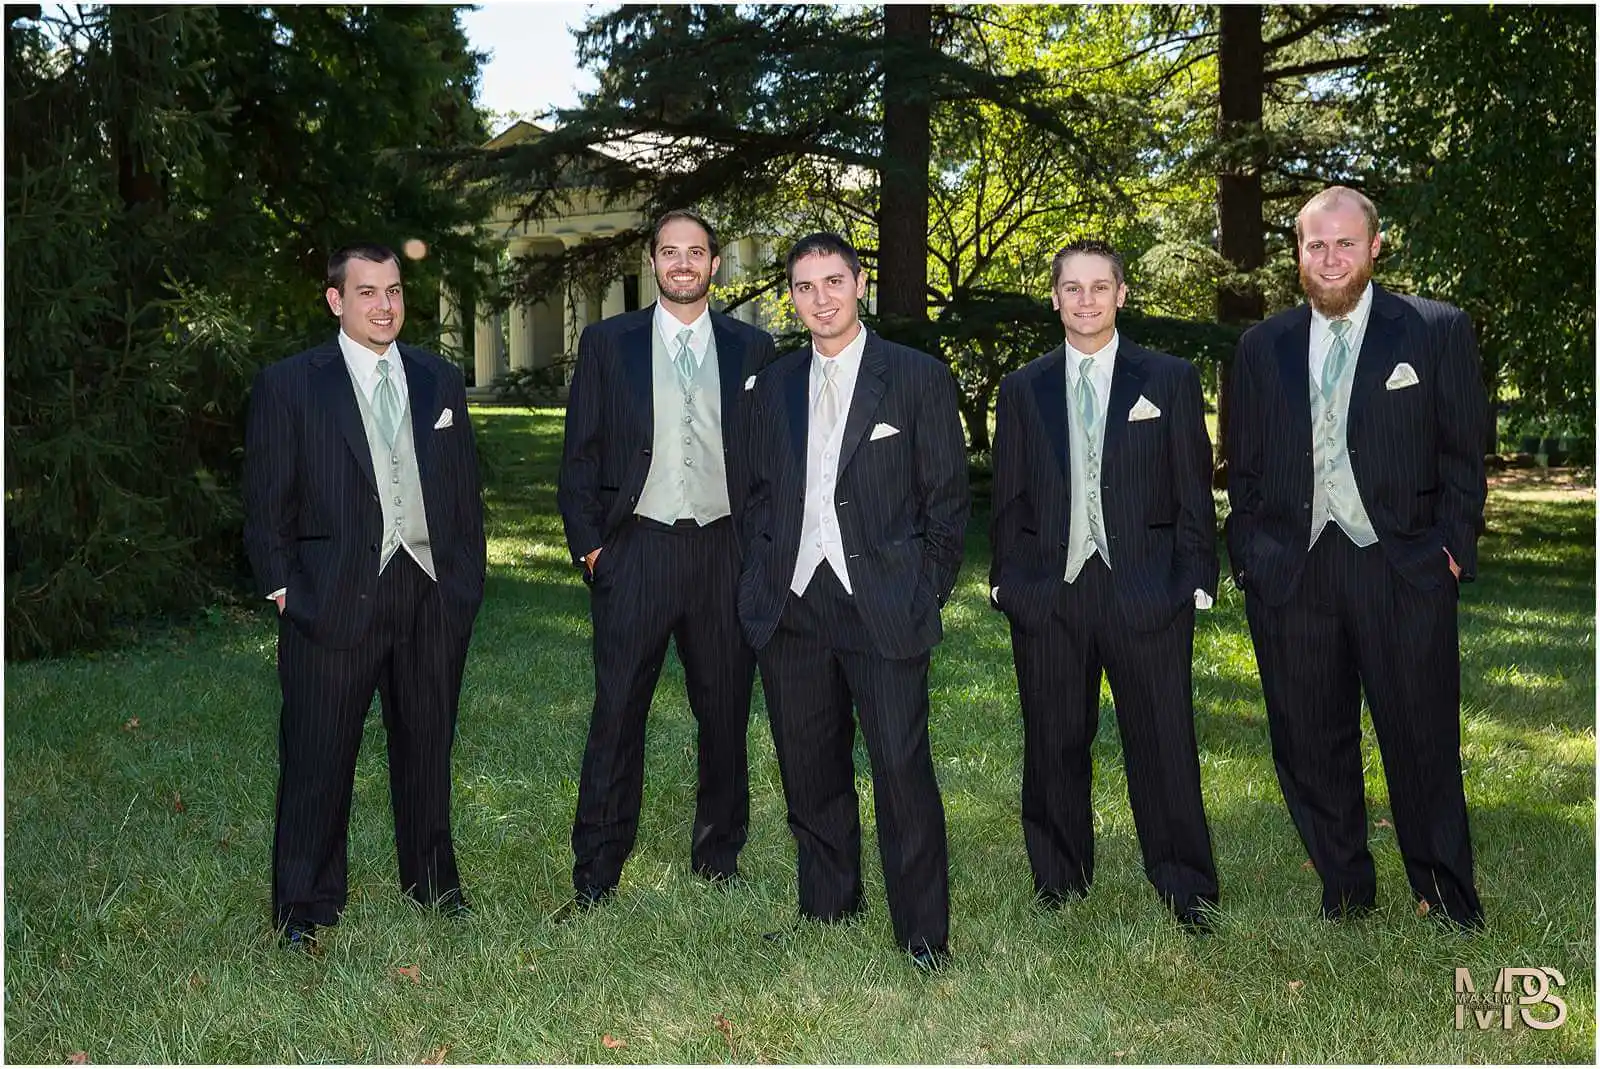 Elegant groomsmen posing outdoors in formal attire.